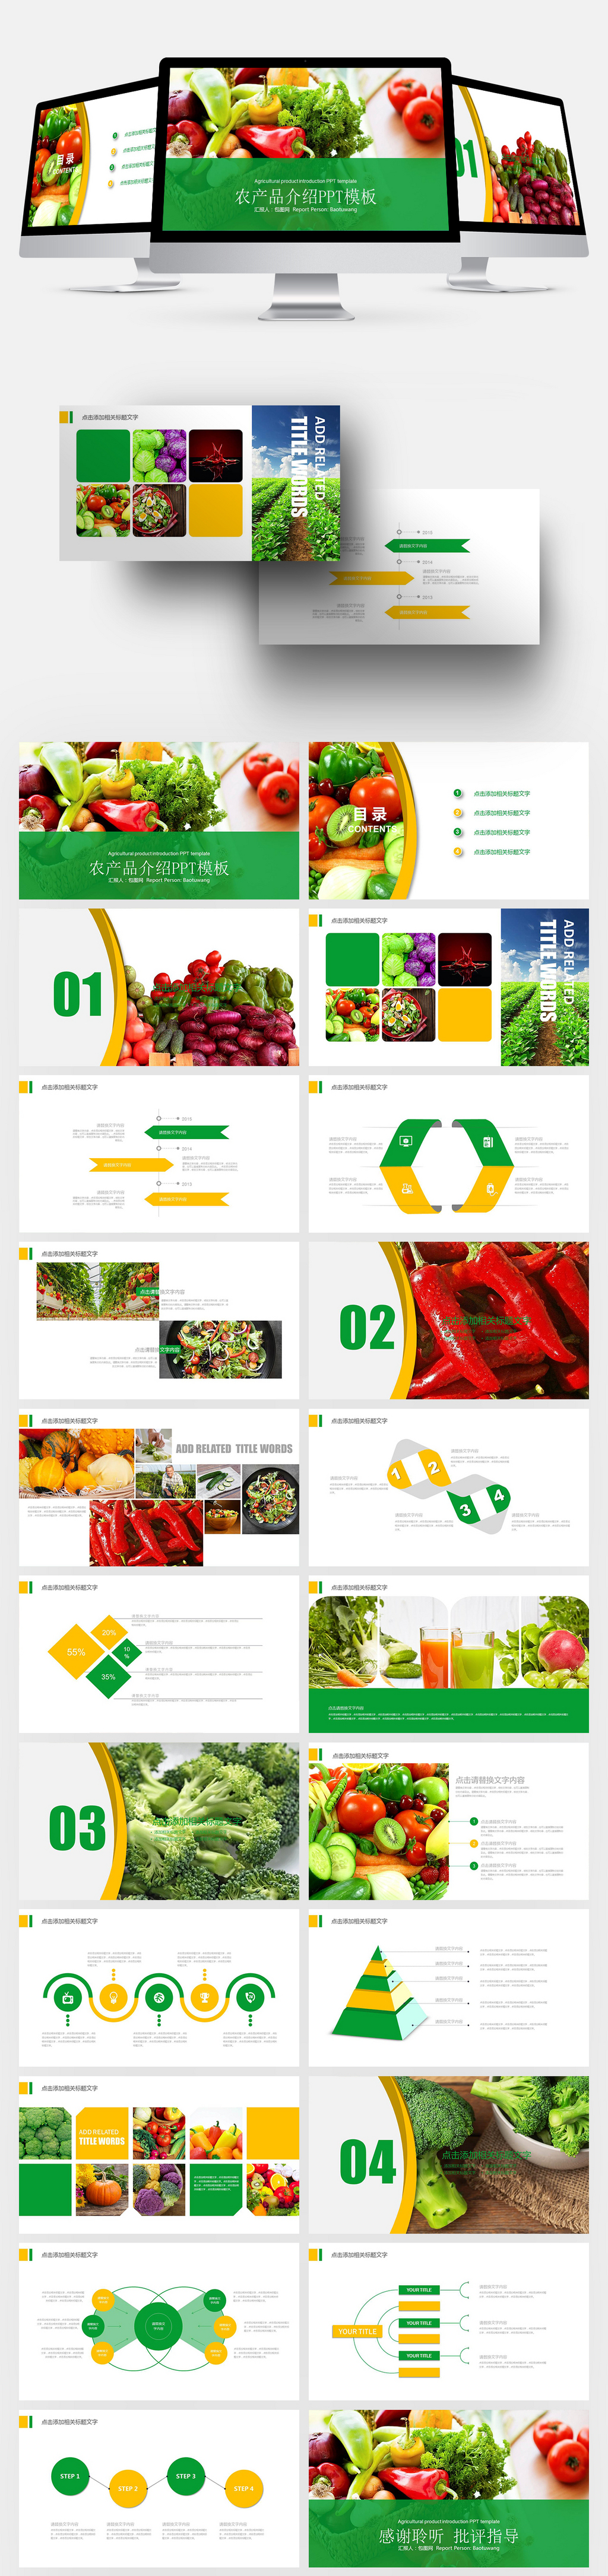 健康食物农产品介绍ppt模板